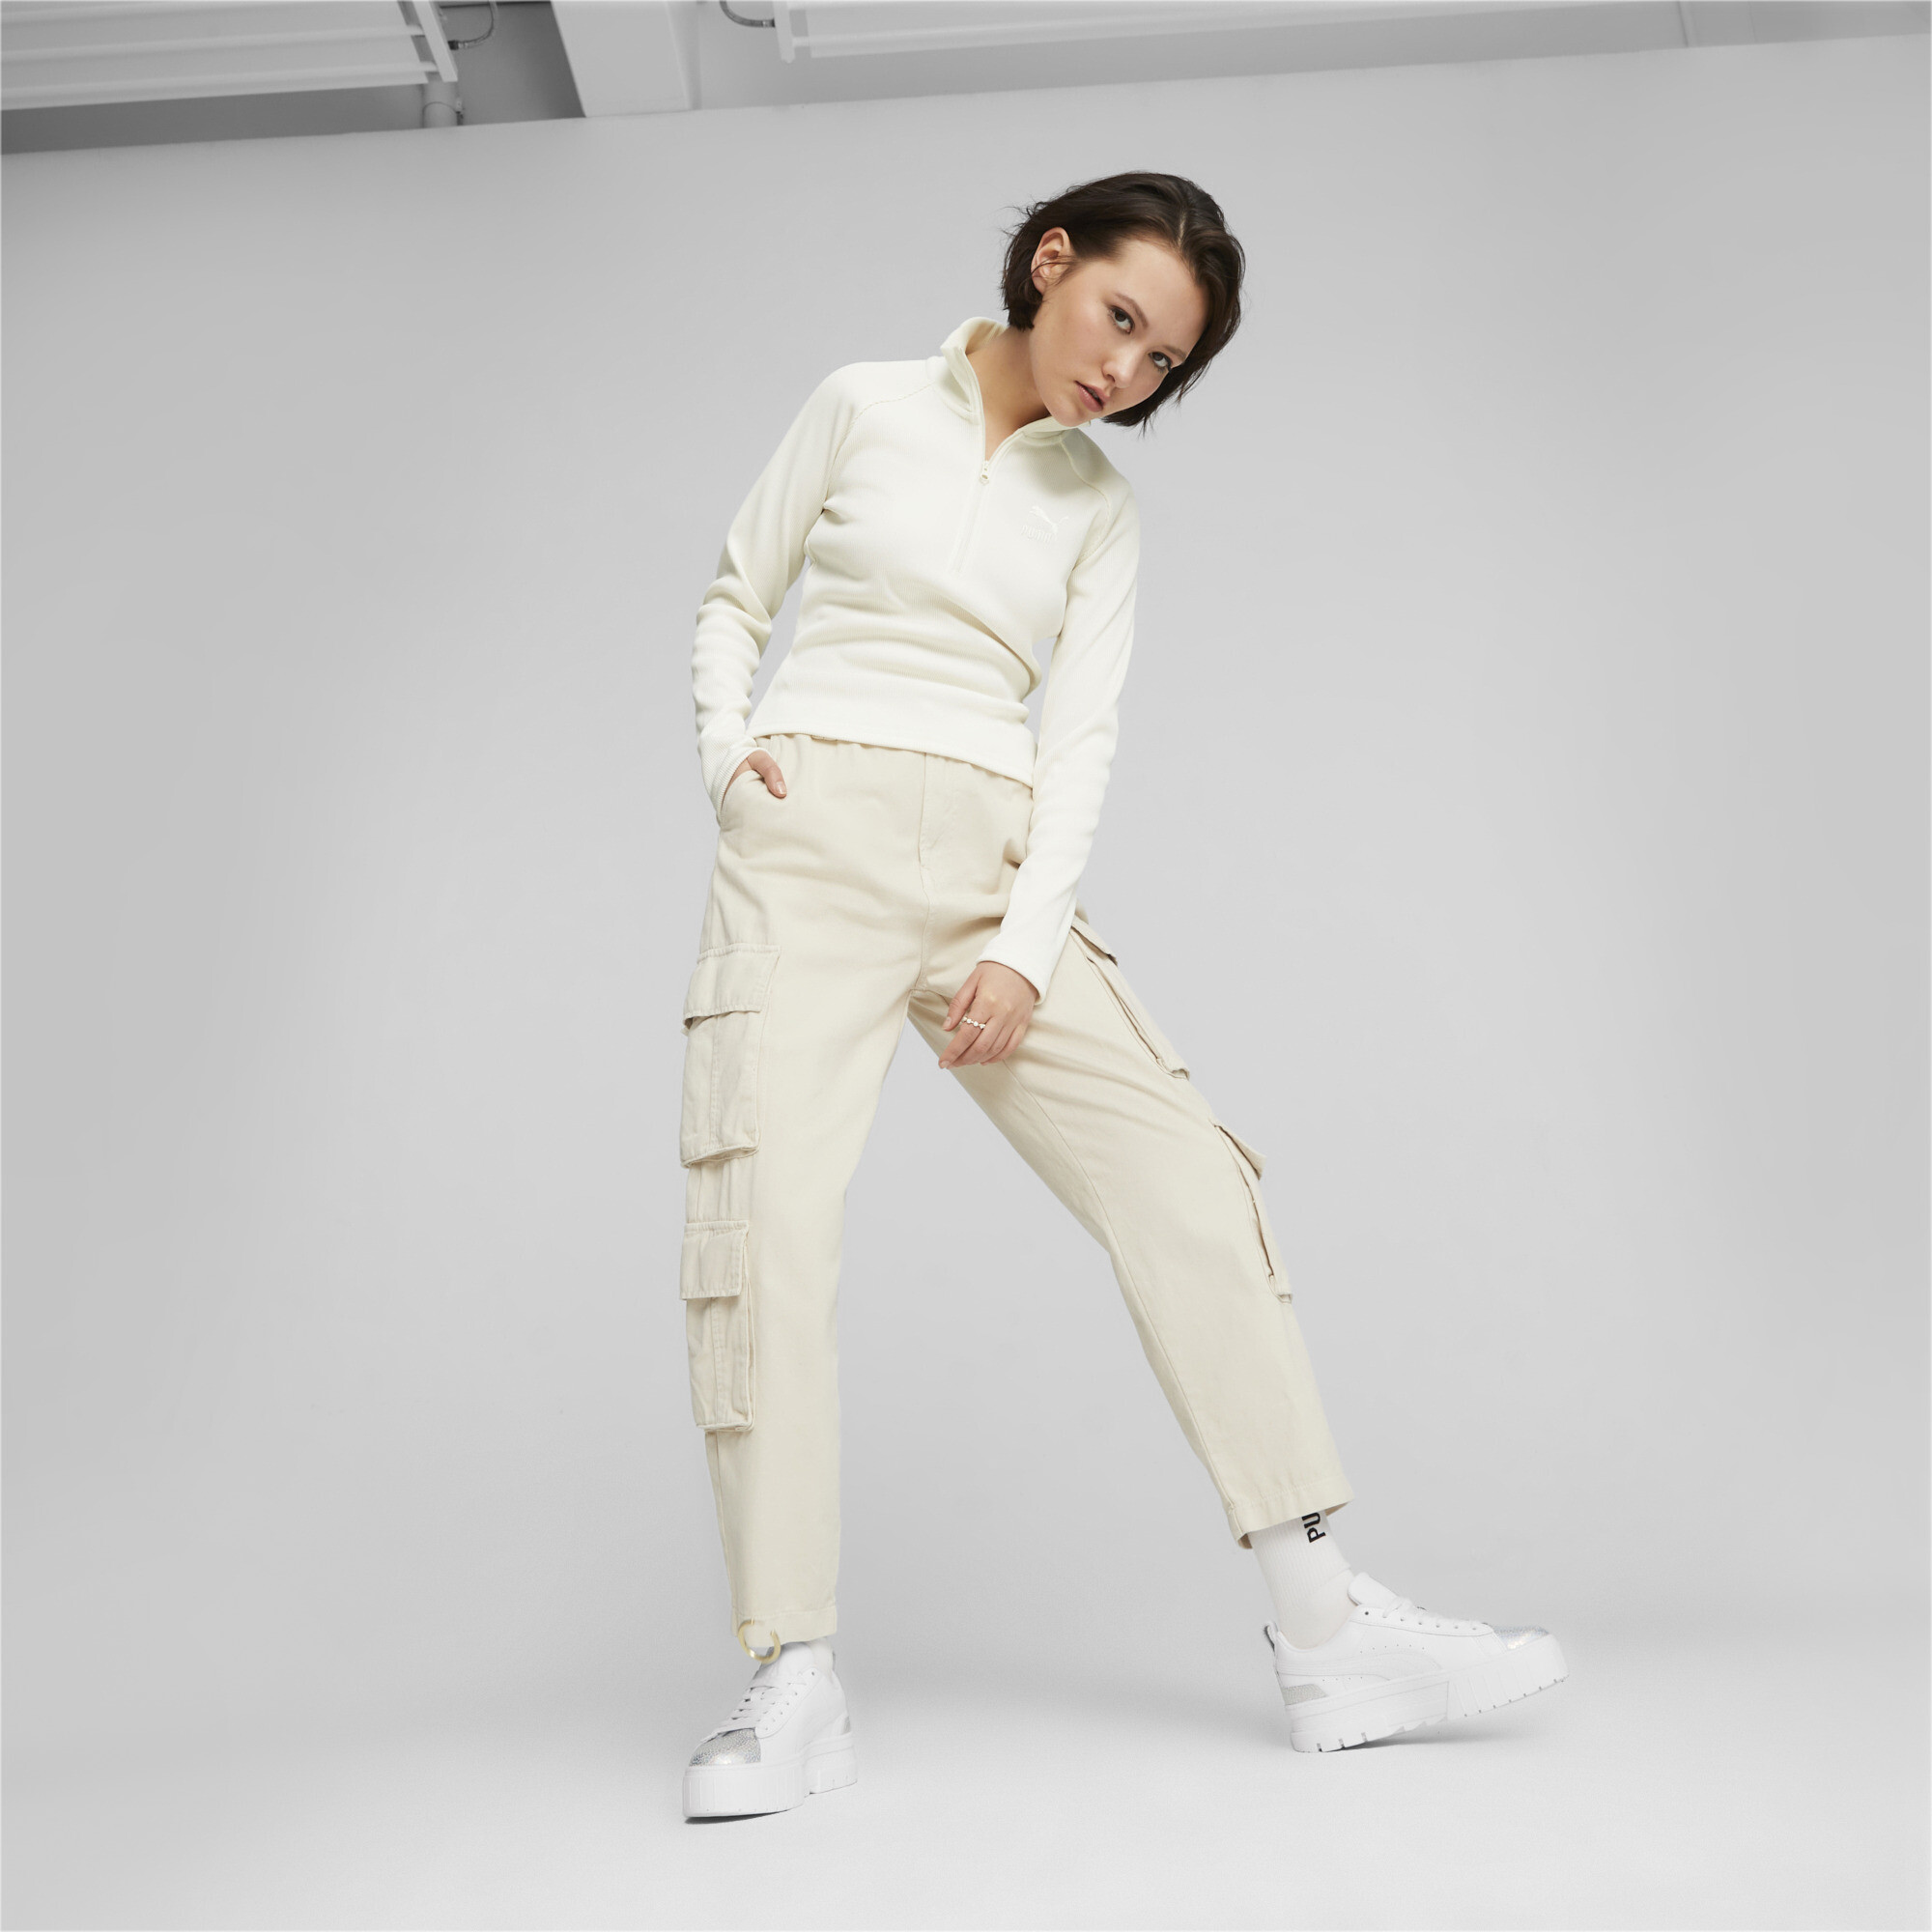 Women's PUMA Mayze Tomorrowland Fashion Sneakers Women In White, Size EU 37.5